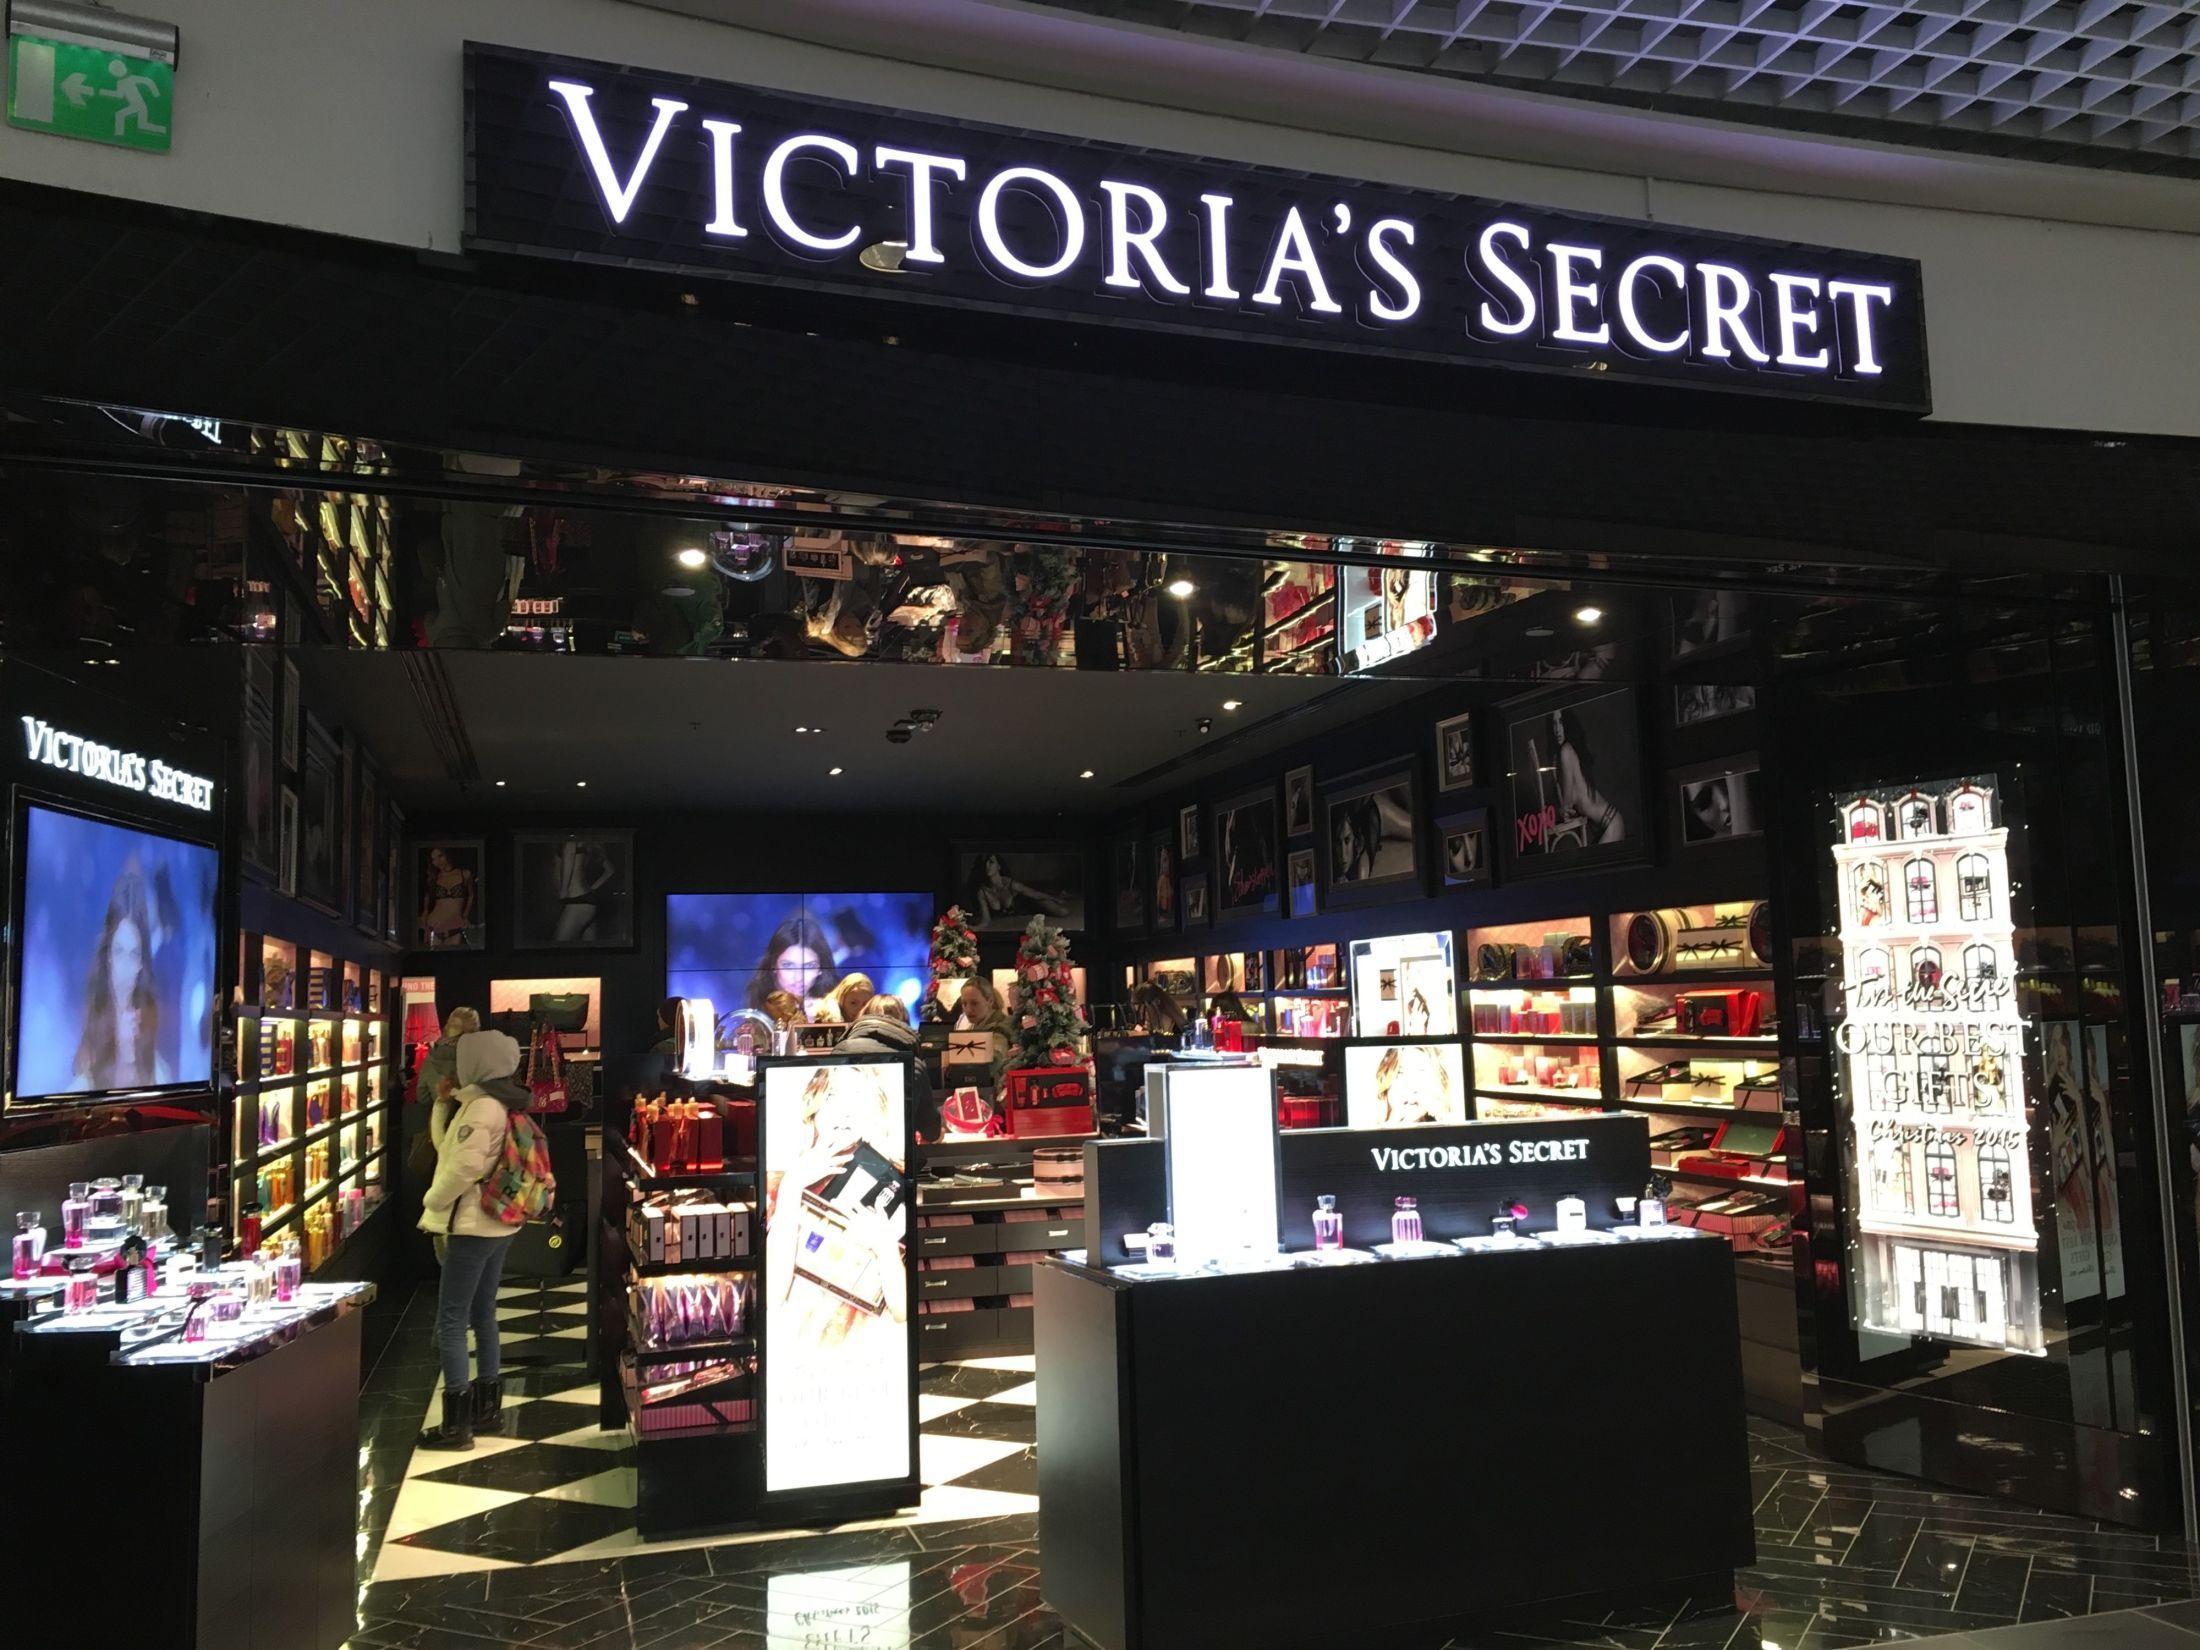 OSLO-BUTIKK: Butikken som åpnet denne helgen duftet av Victoria's Secret, men hadde et beskjedent utvalg av undertøy - akkurat som forventet. Foto: MinMote